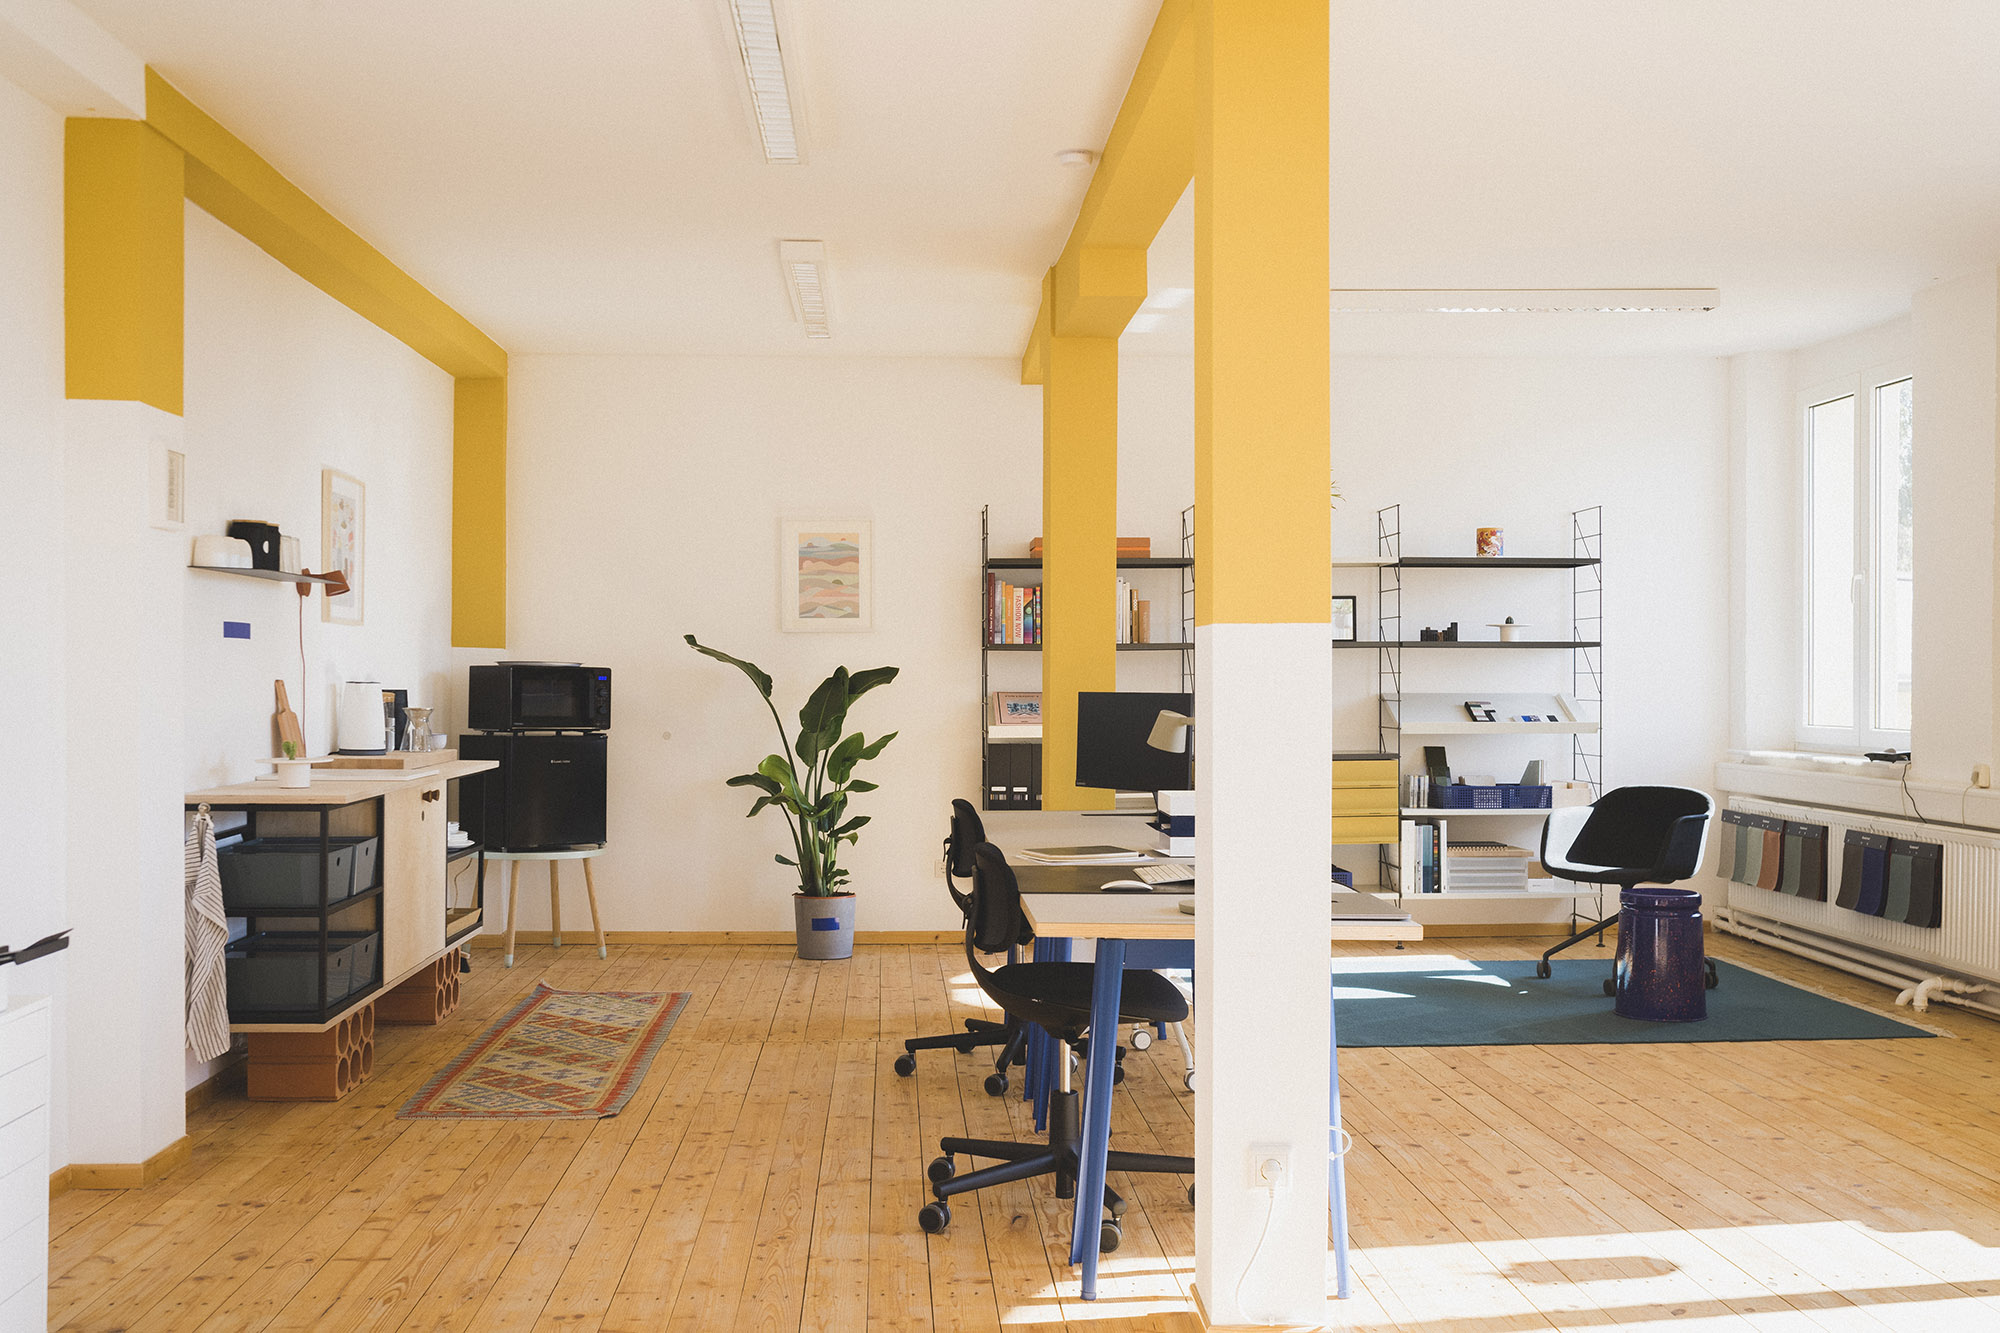 Büros des Designstudios Markmus Design in Fürth, mit modernen, warmen Schreibtischen, Stühlen und Möbeln